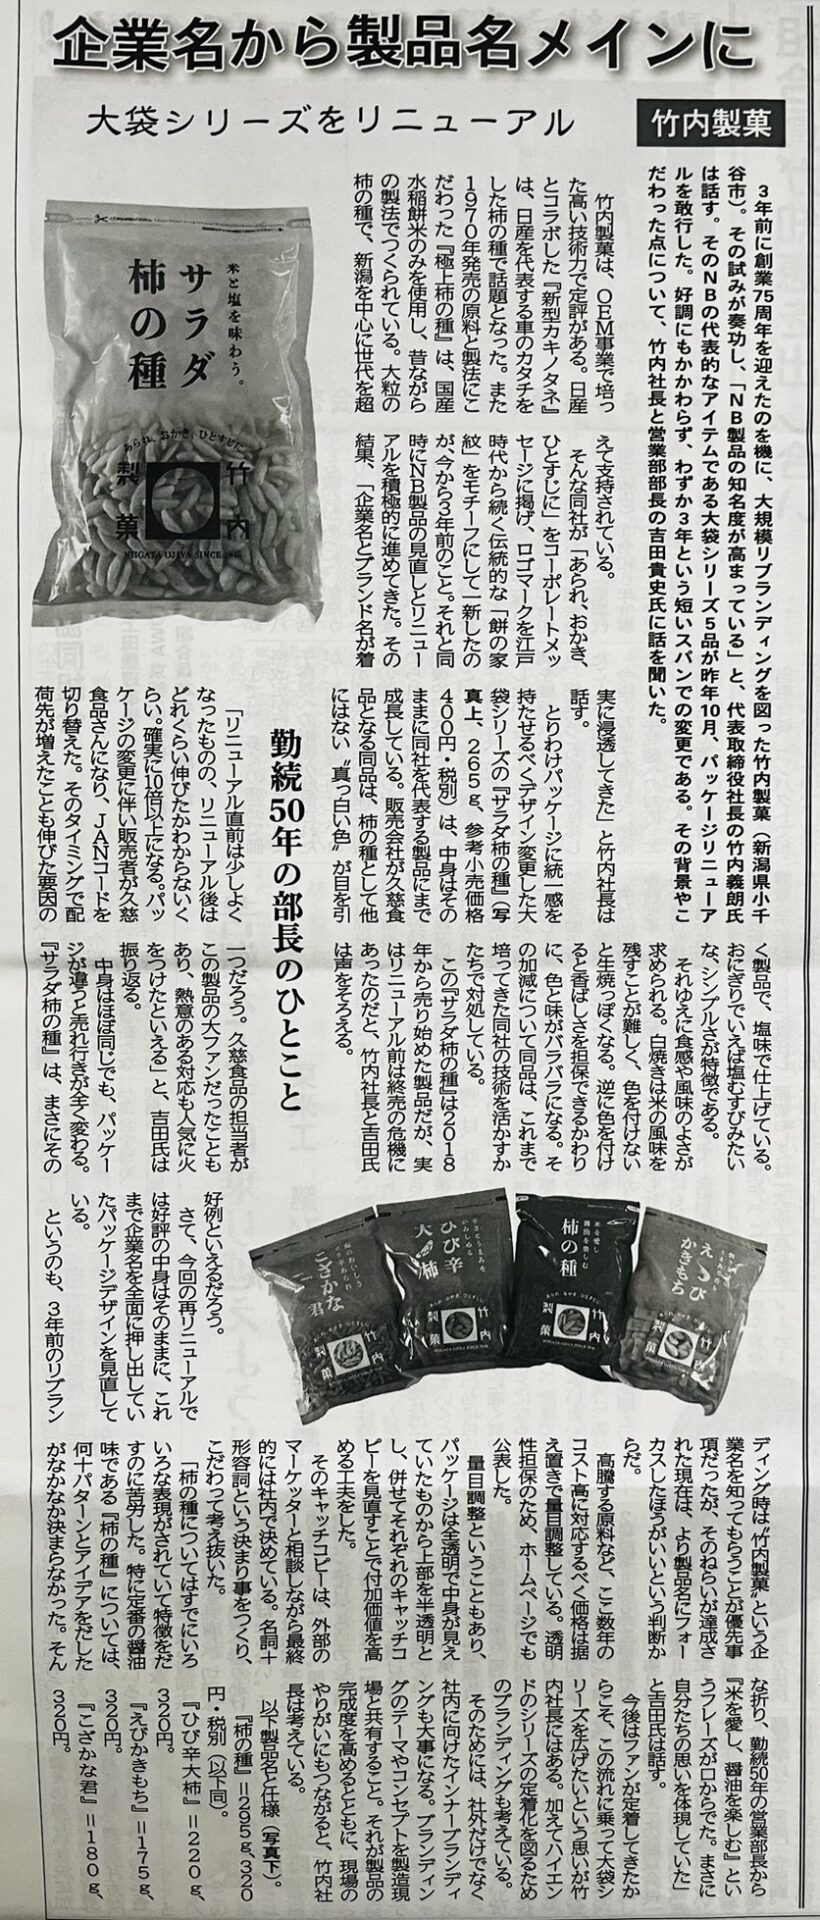 菓子食品新聞に当社記事が掲載されました。